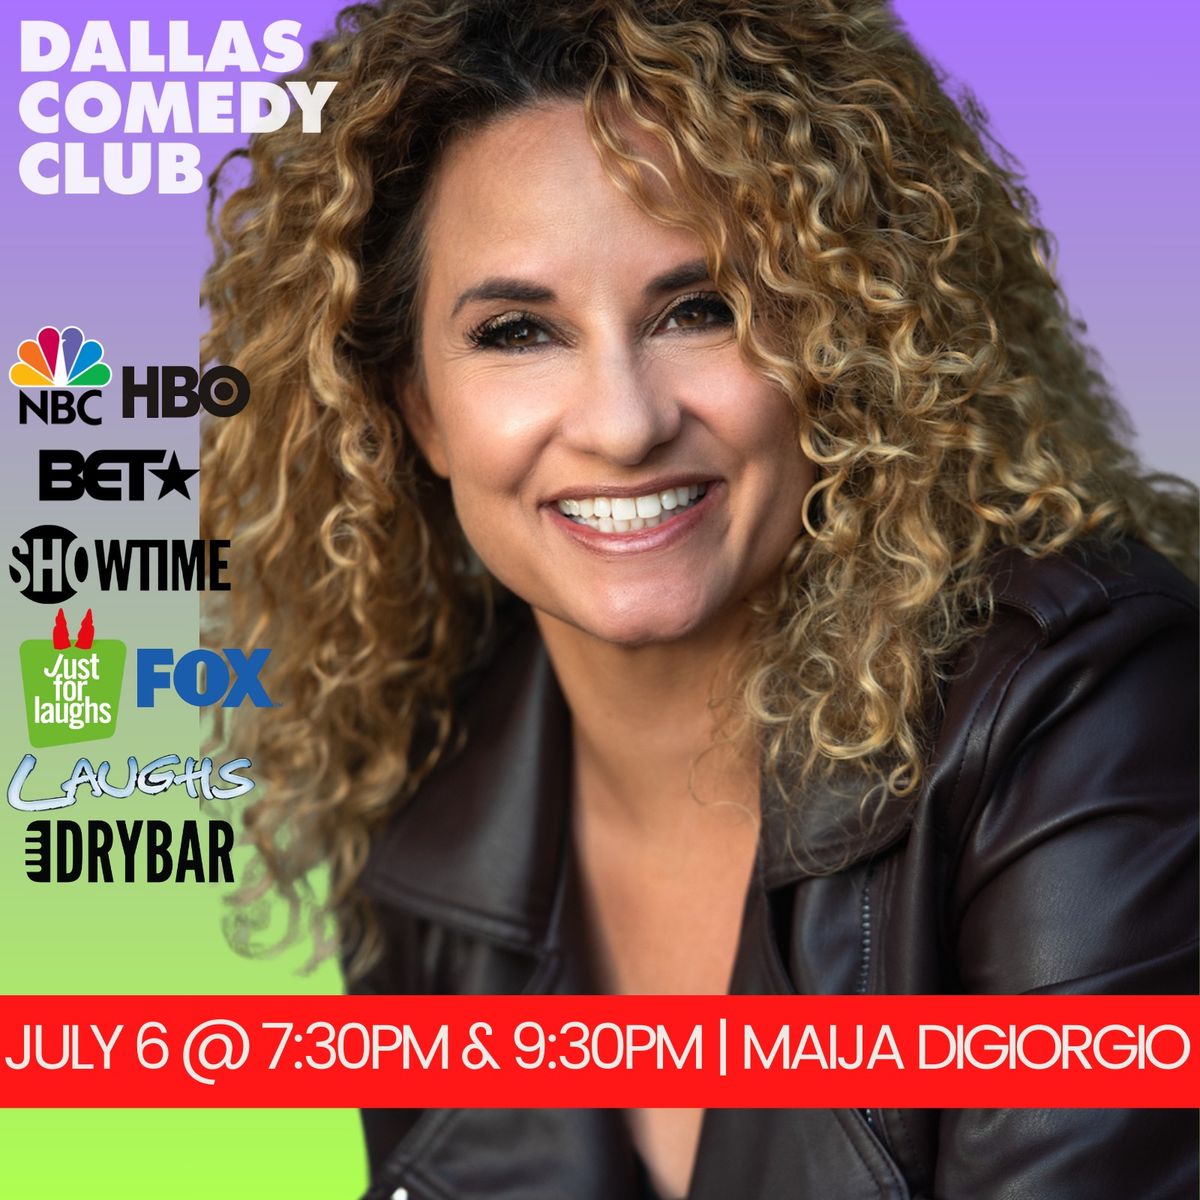 Dallas Comedy Club Presents: Maija DiGiorgio